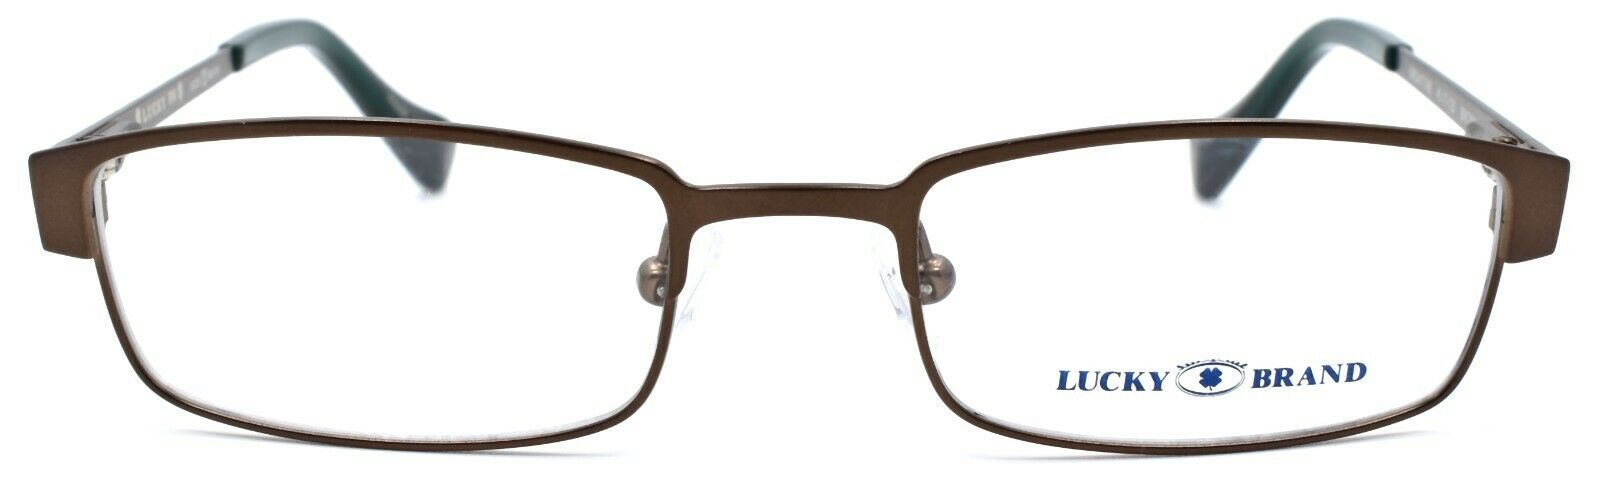 2-LUCKY BRAND Break Time Kids Unisex Eyeglasses Frames 45-17-125 Brown-751286214697-IKSpecs